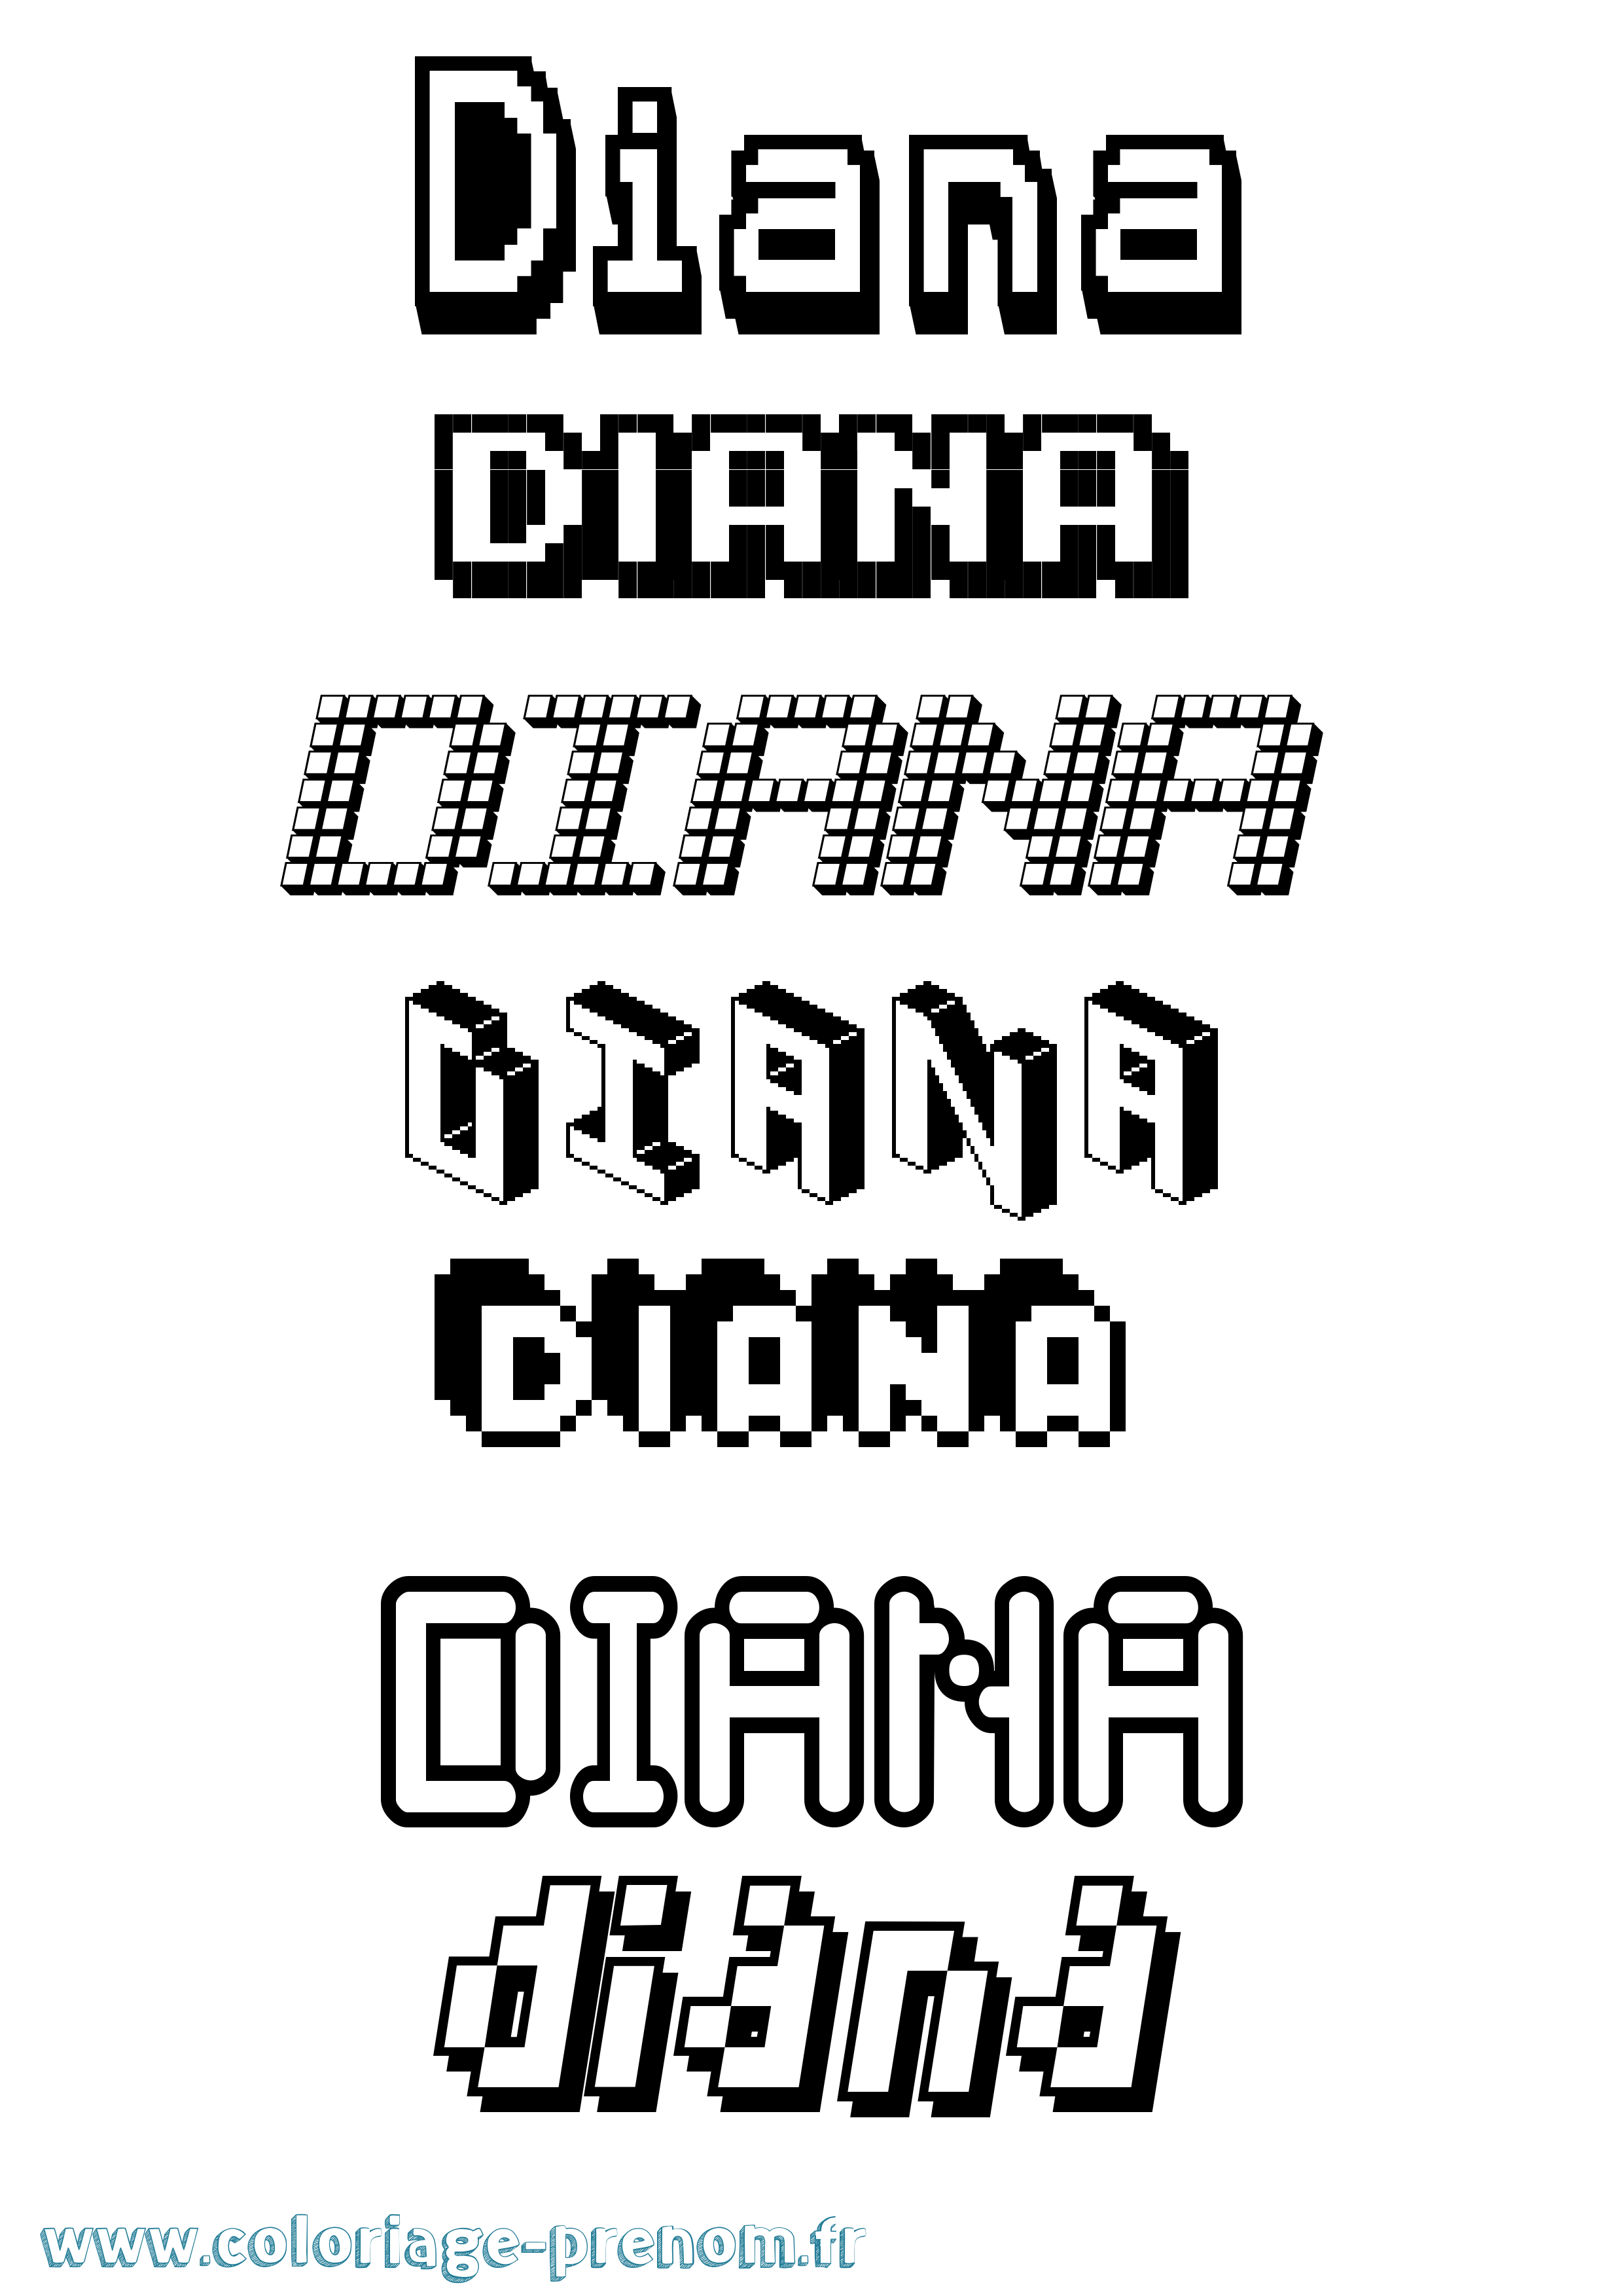 Coloriage prénom Diana